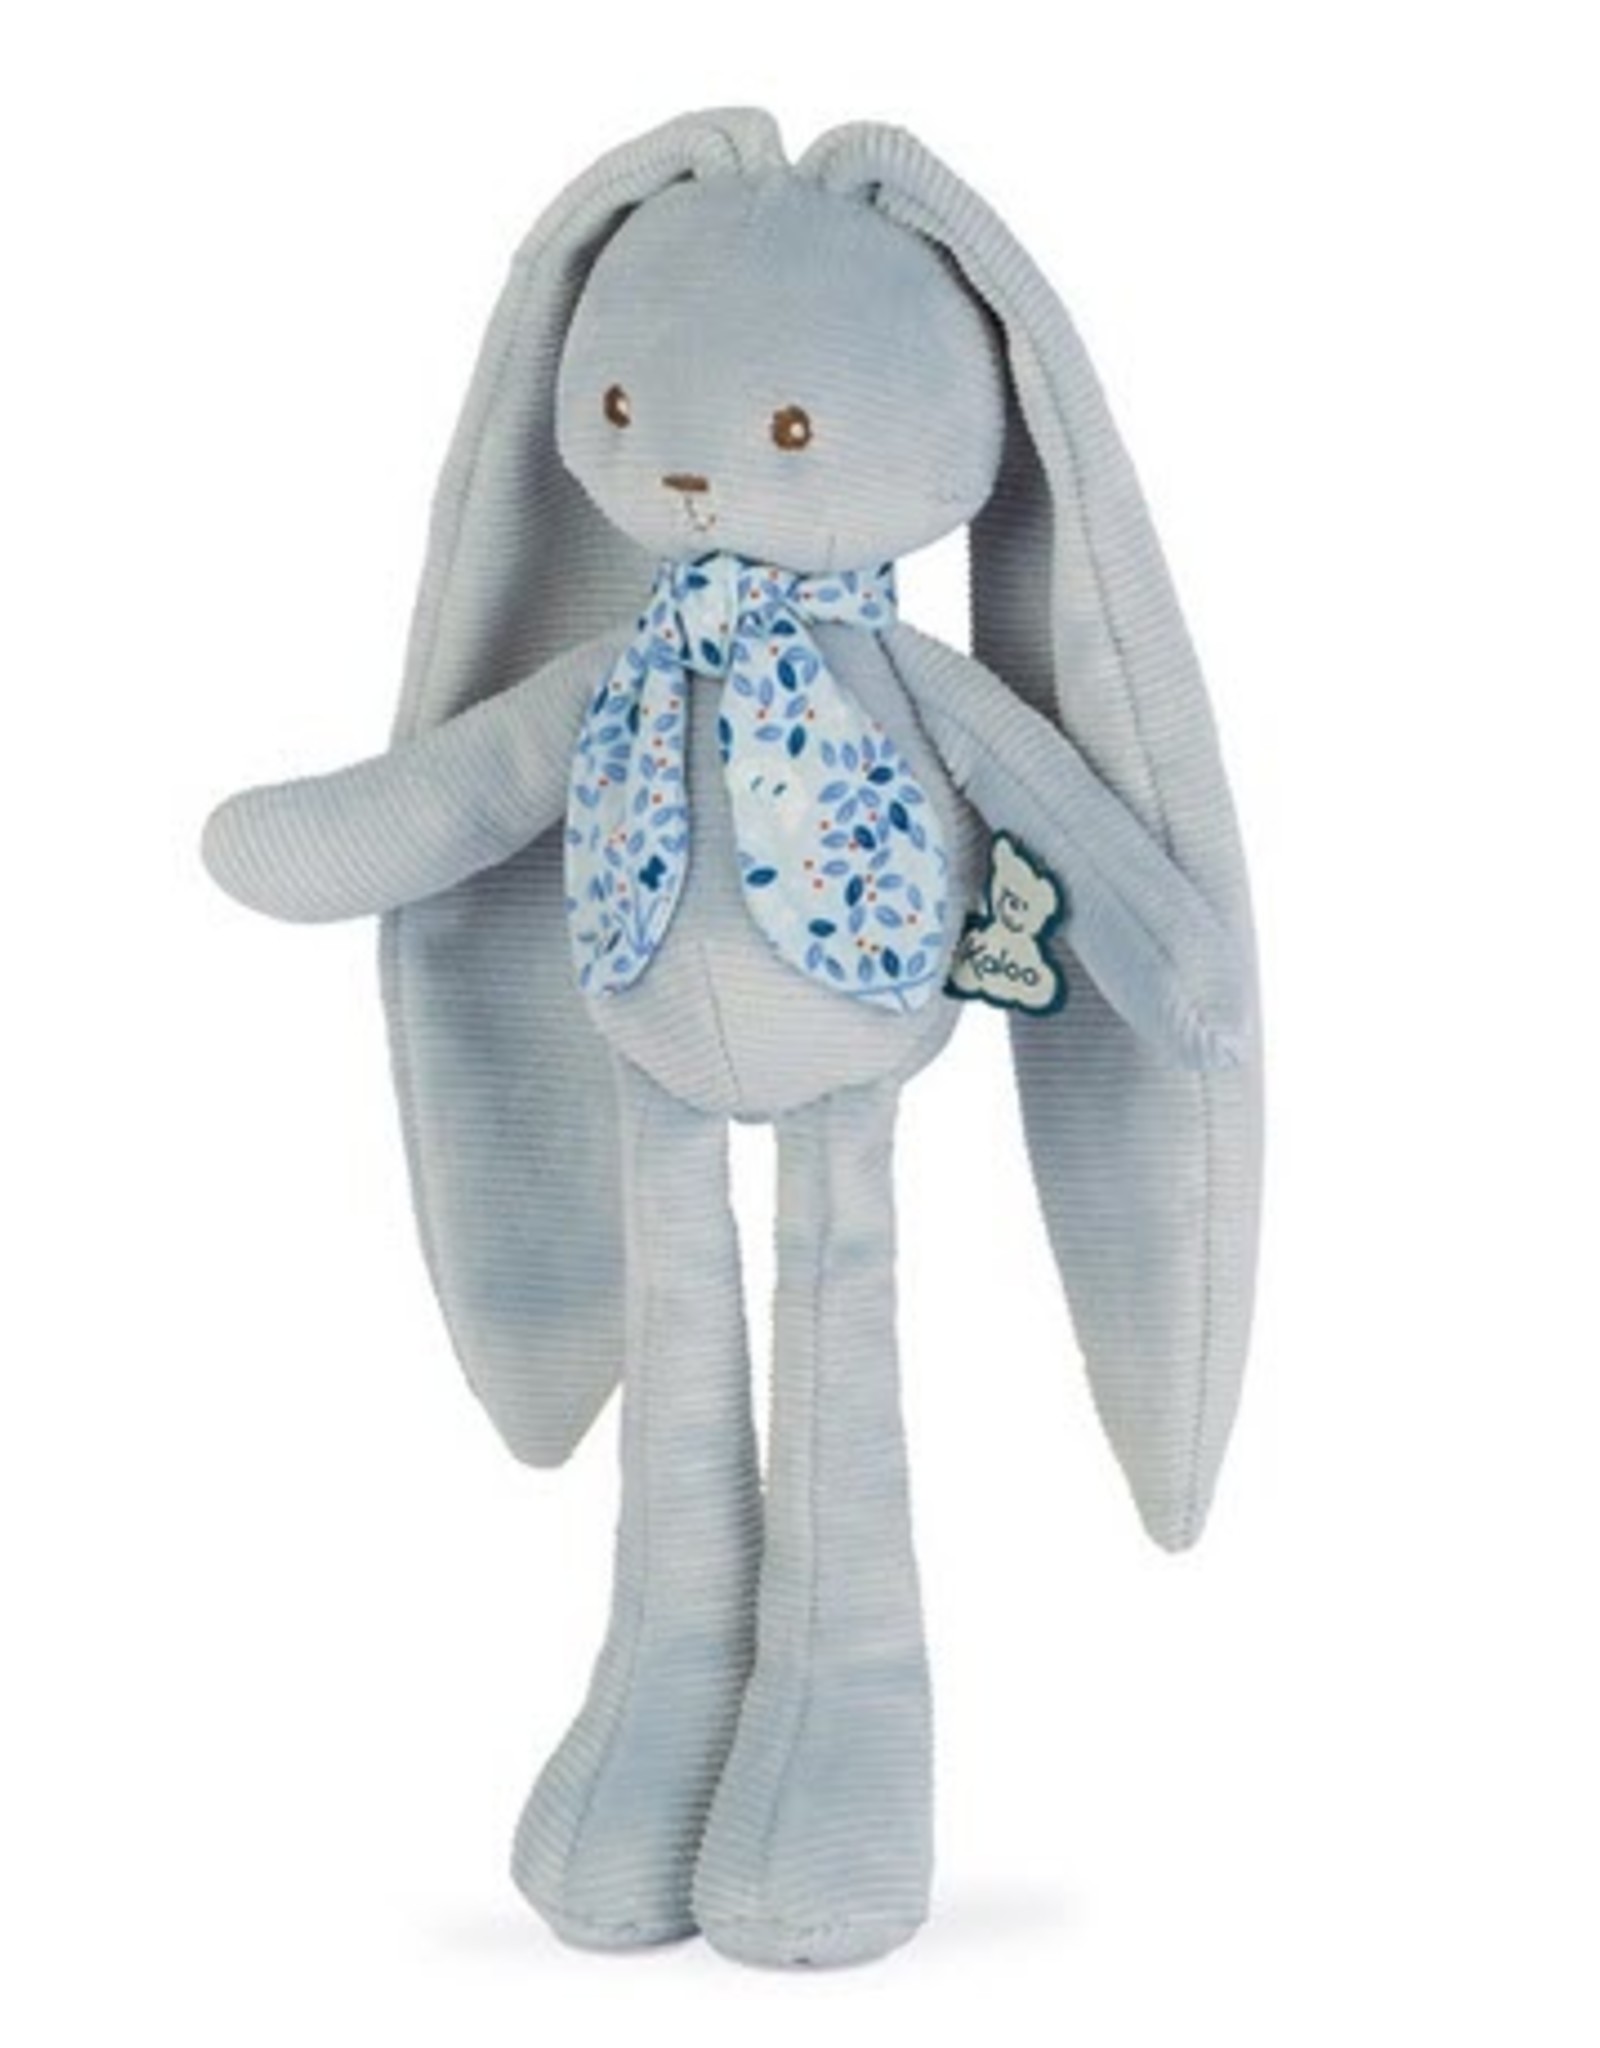 Kaloo Kaloo - Lapinoo Rabbit Blue 25cm